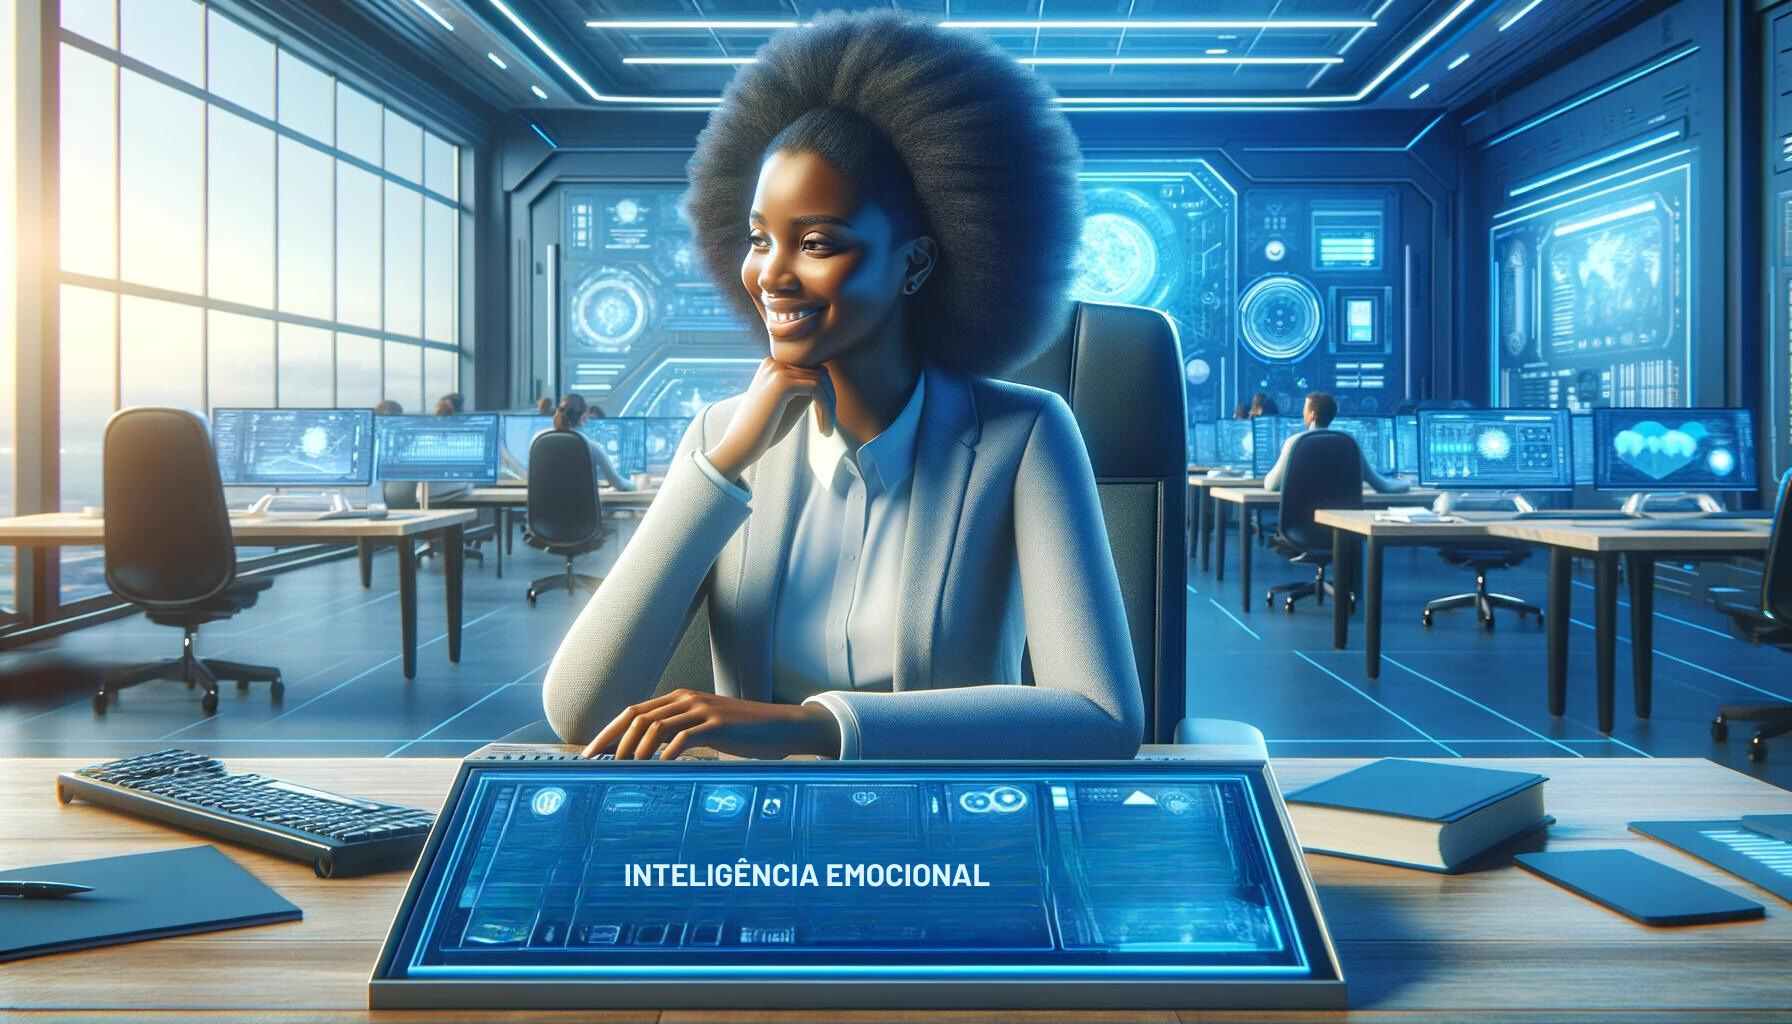 Uma mulher de ascendência africana sentada à sua mesa de trabalho em um escritório futurista, exibindo uma expressão de contentamento que reflete alta inteligência emocional.